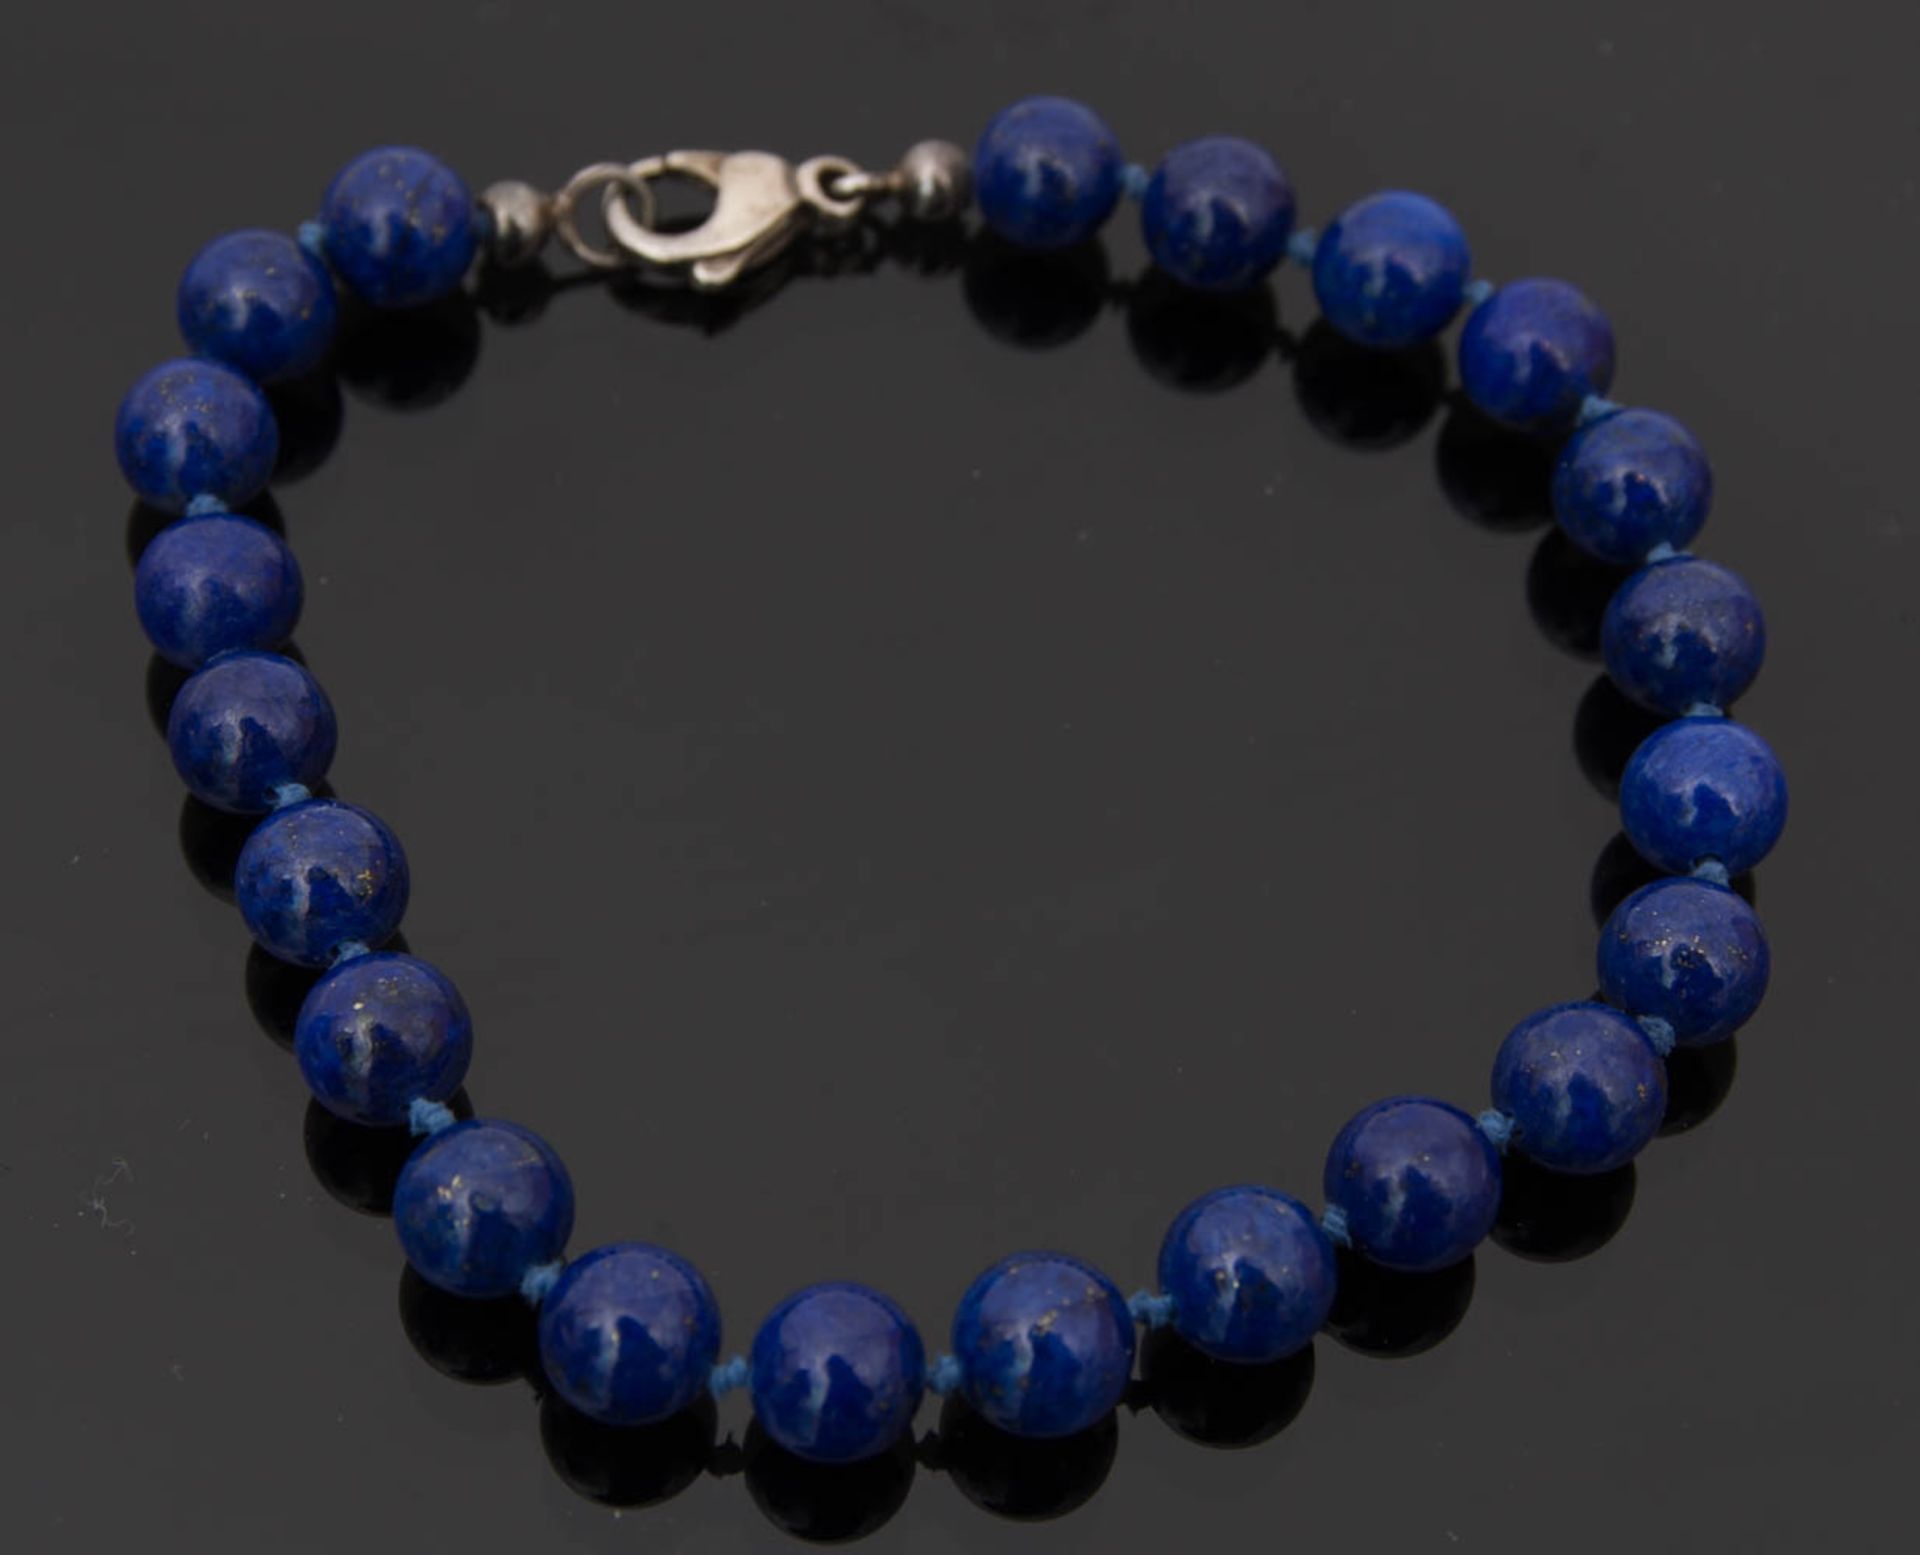 LAPISLAZULI-ARMKETTE, China 20. JahrhundertArmband/Armkette aus dunkelblauen Lapislazuli-Steinen.